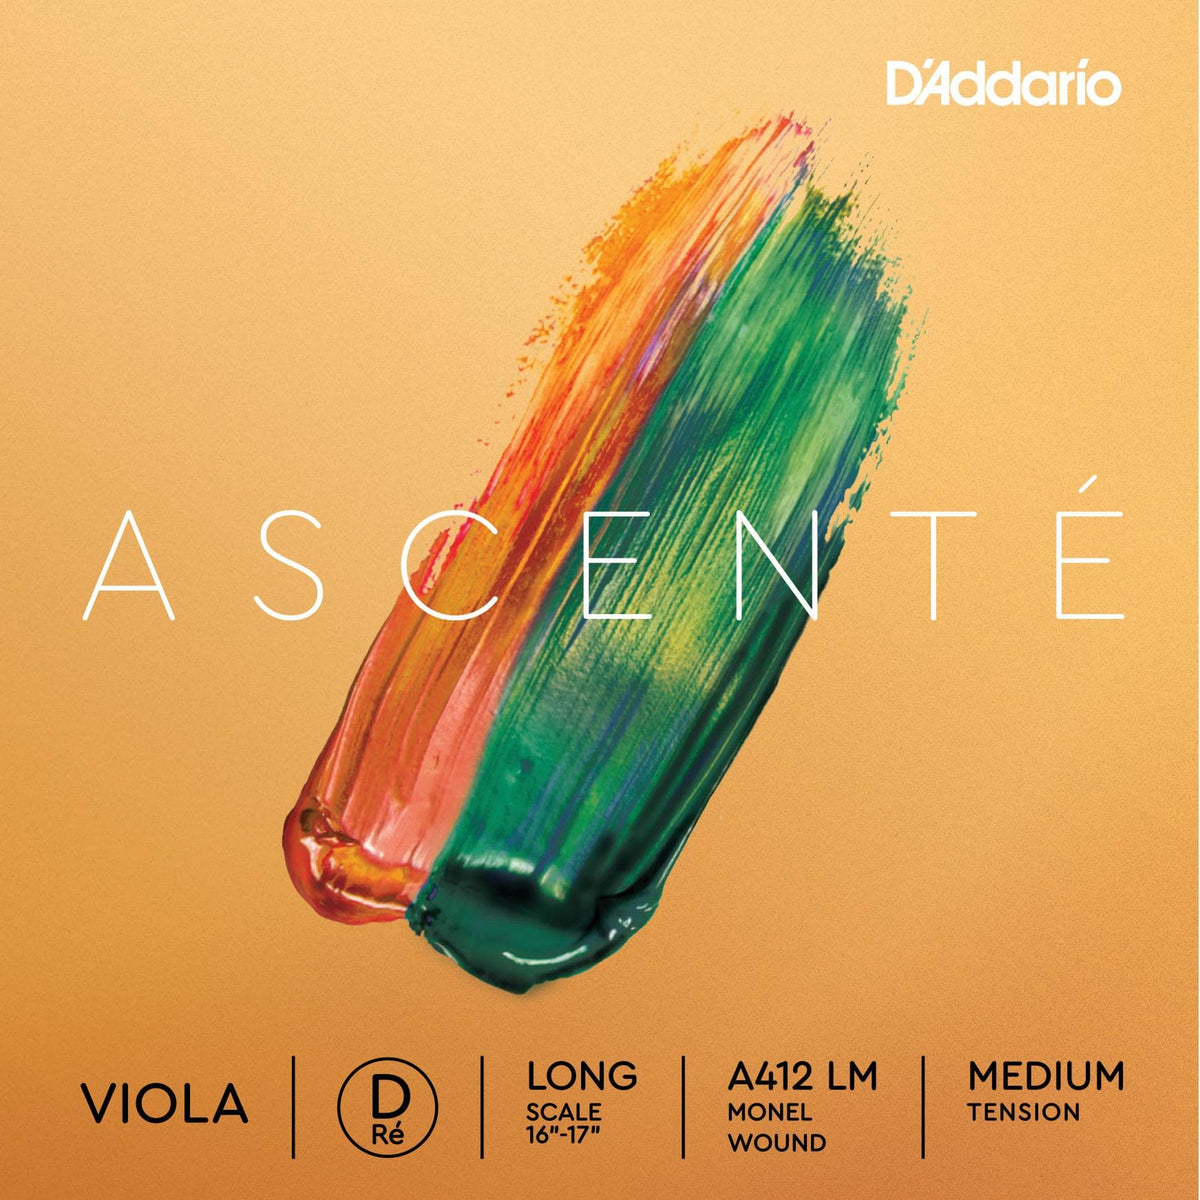 DAddario Ascente Viola D String